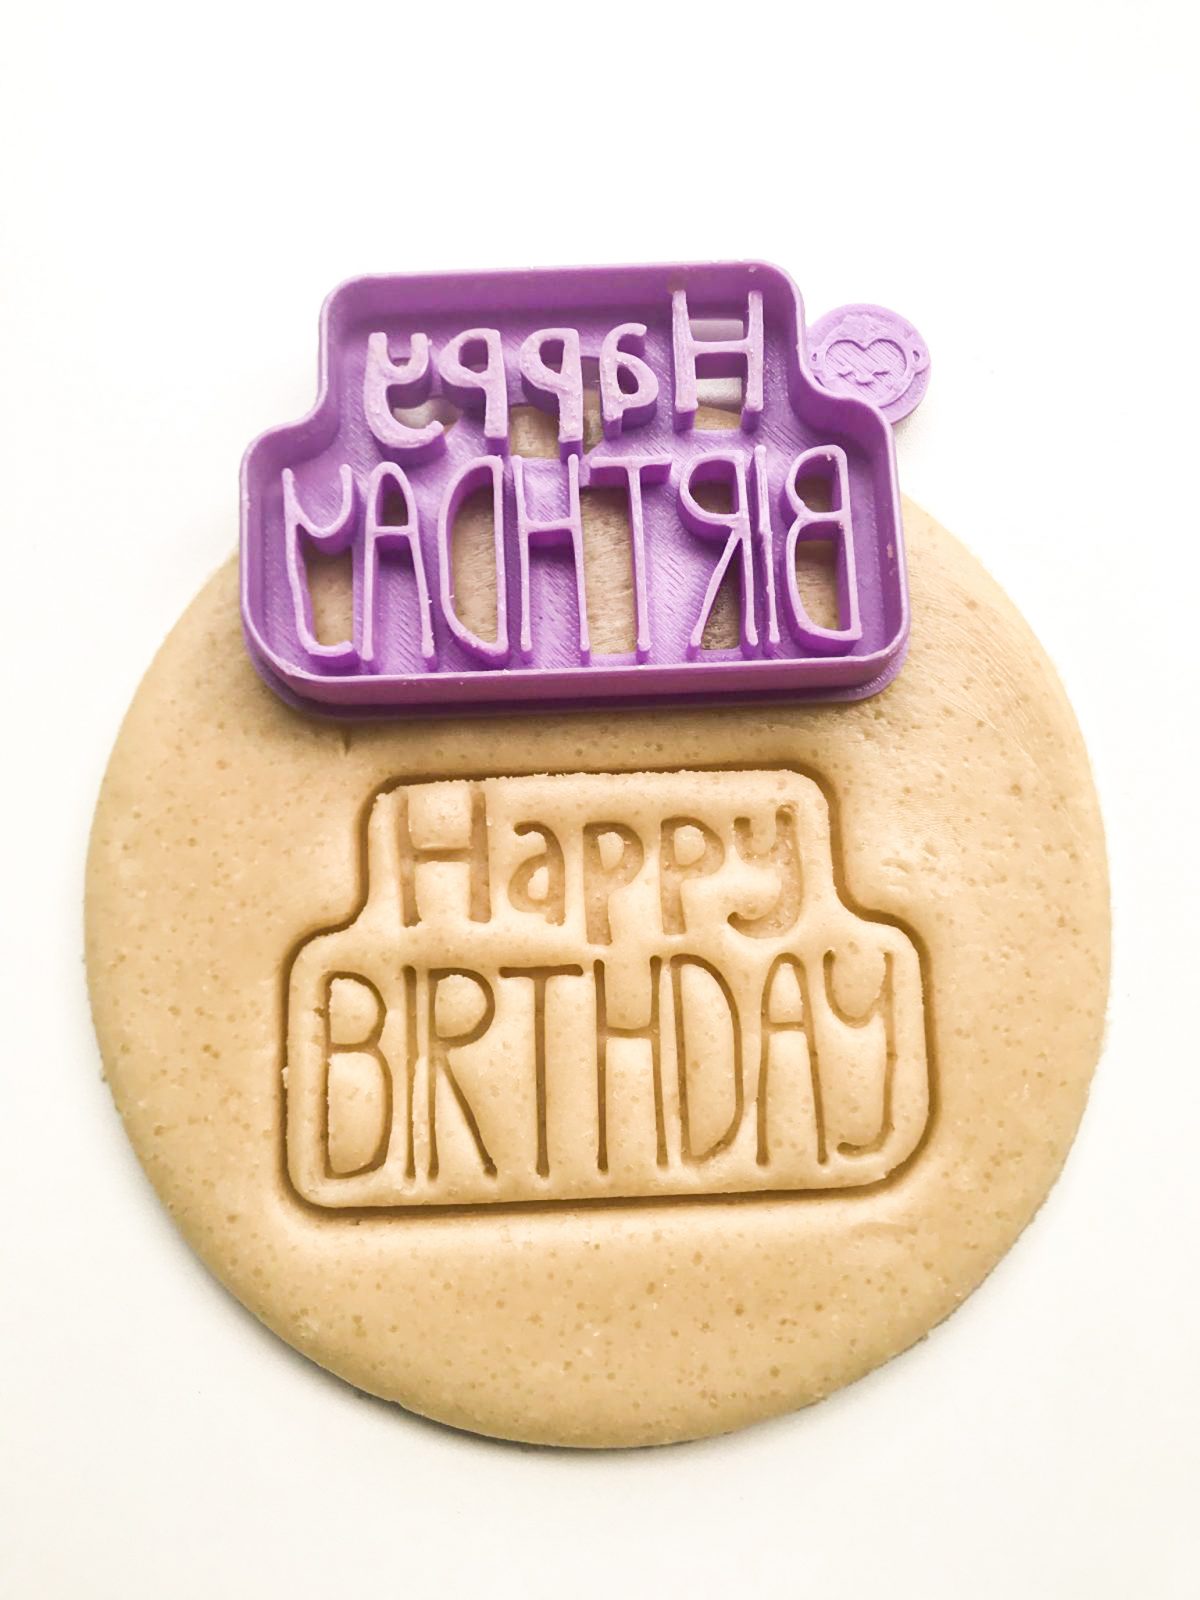 Happy Birthday Cookie Cutter